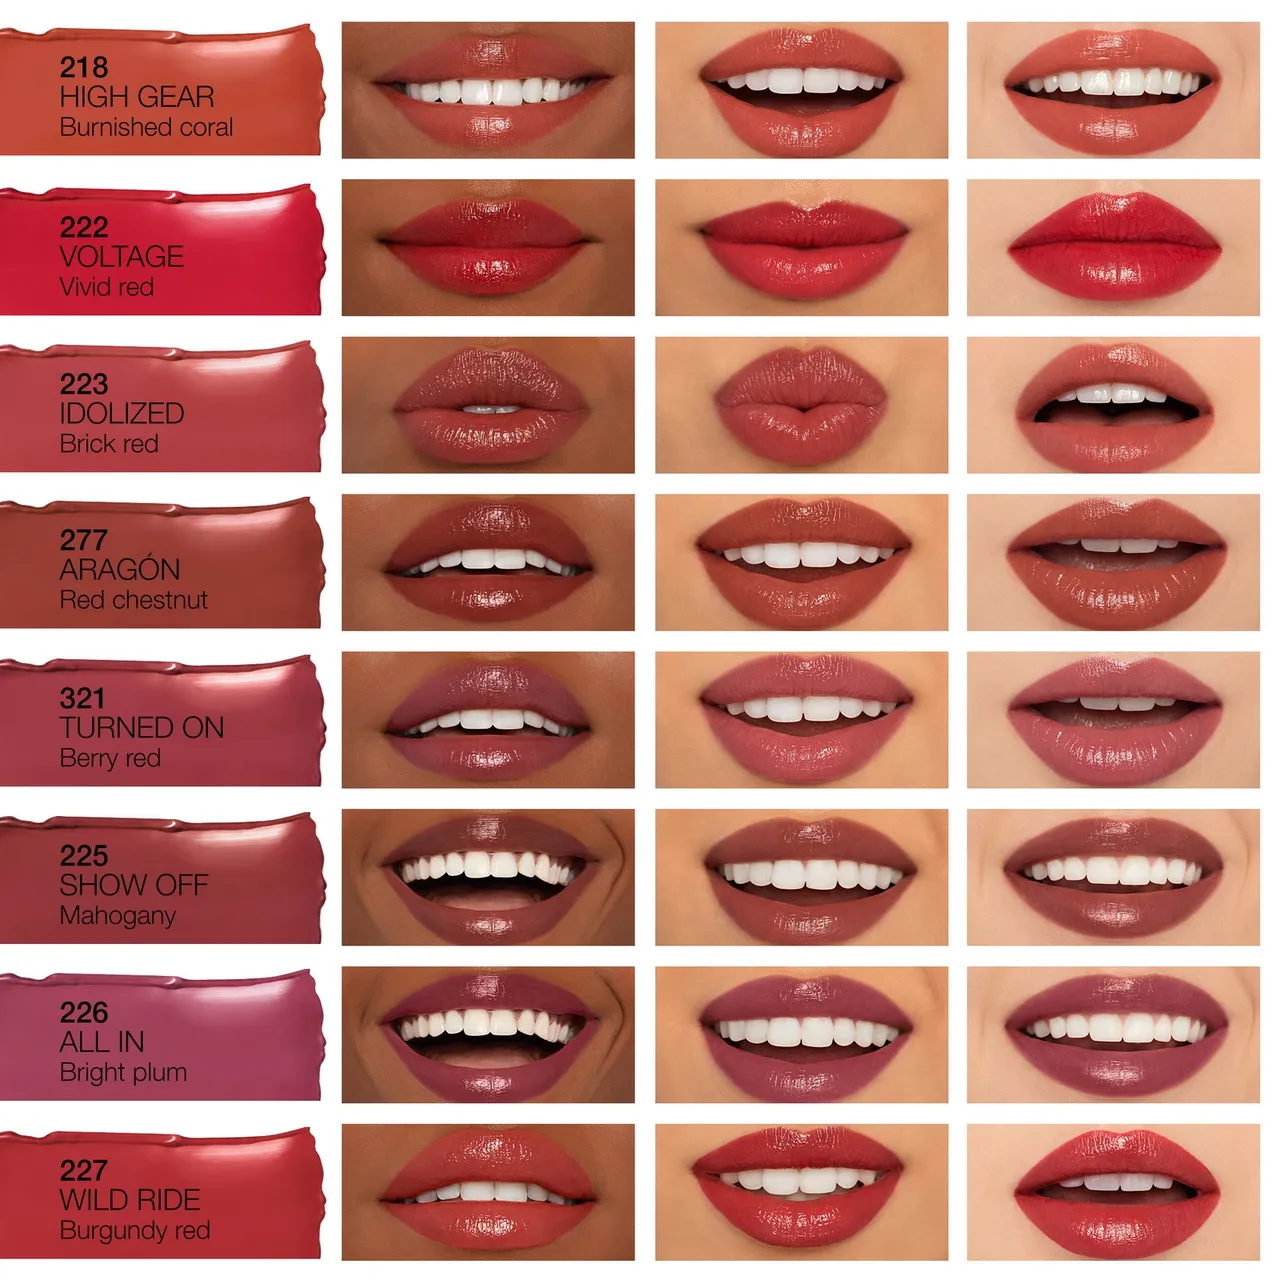 NARS Afterglow Sensual Shine Lipstick 1.5g (Various Shades) - Aragón